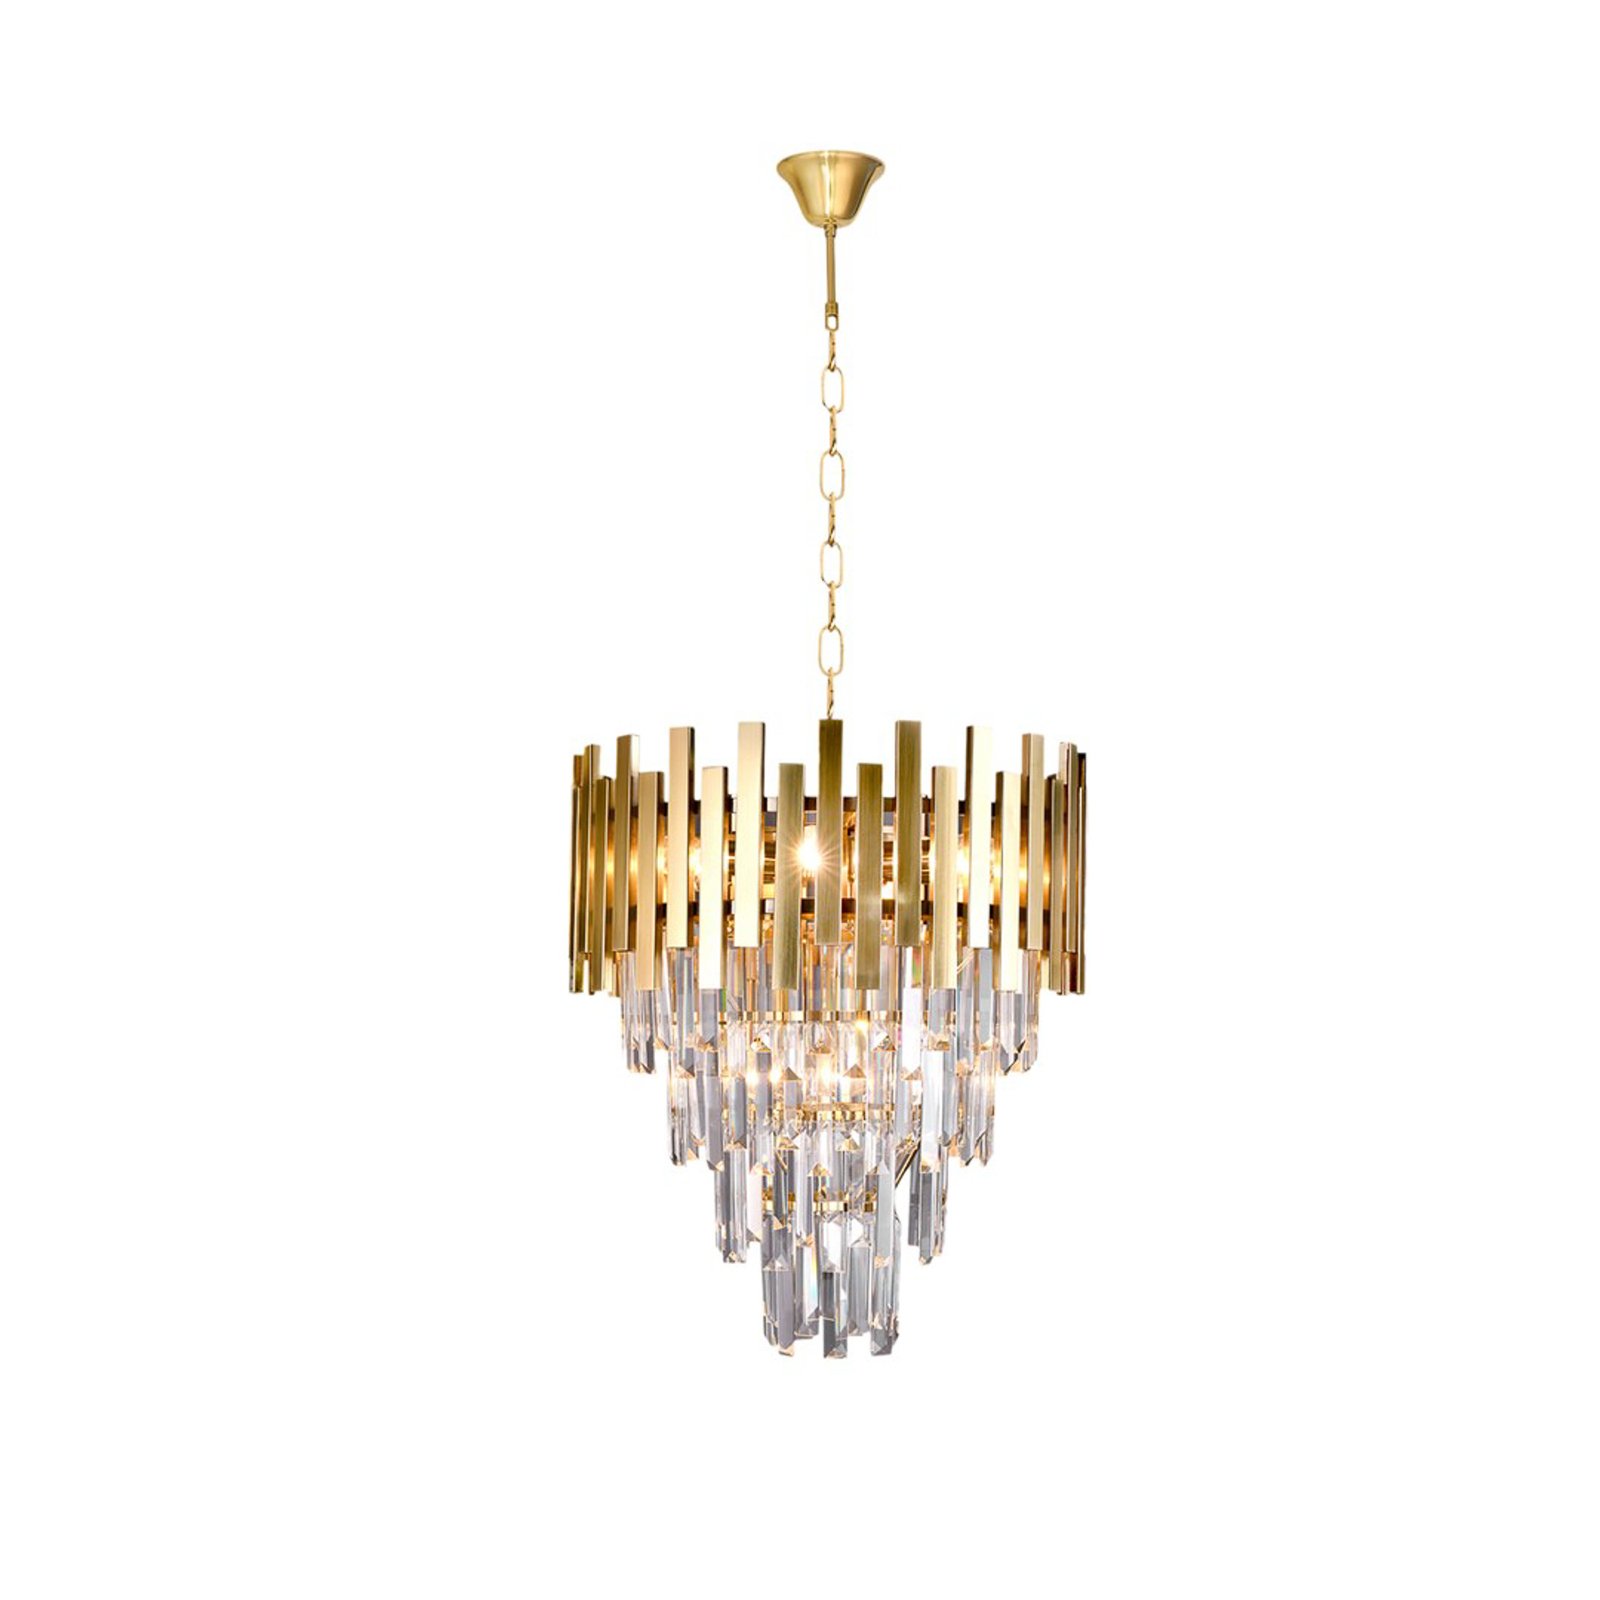 Lampă suspendată Aspen metal Aspen cristale de sticlă aurii, înălțime 50 cm